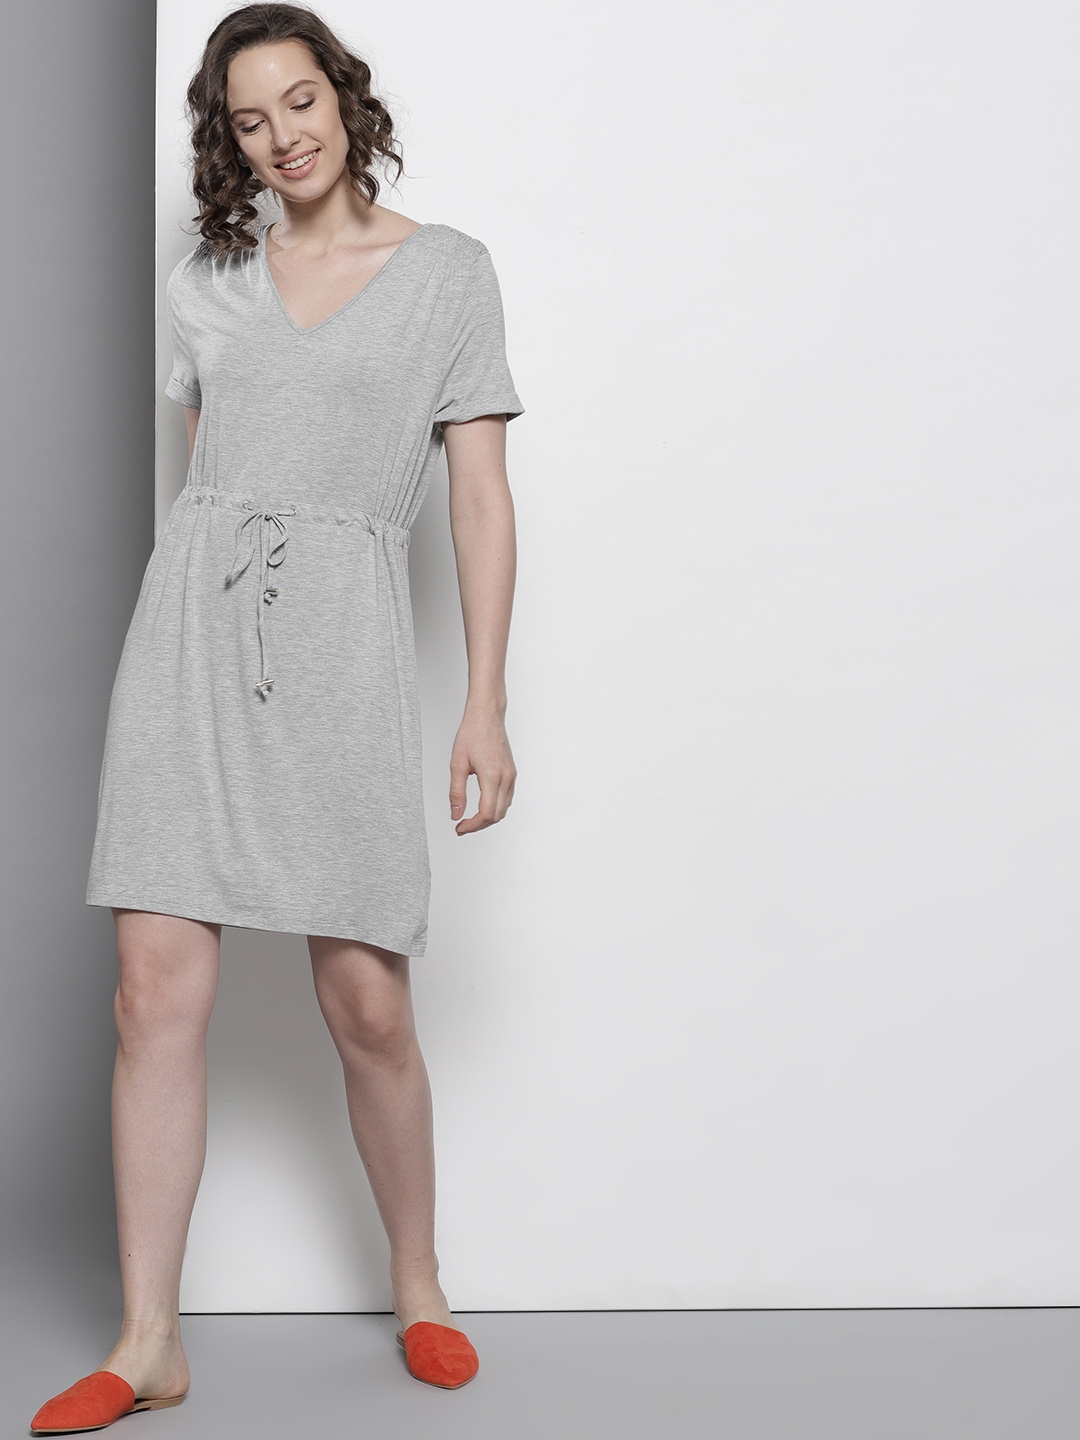 Buy DOROTHY PERKINS Women Grey Melange Solid A Line Dress - Dresses for ...